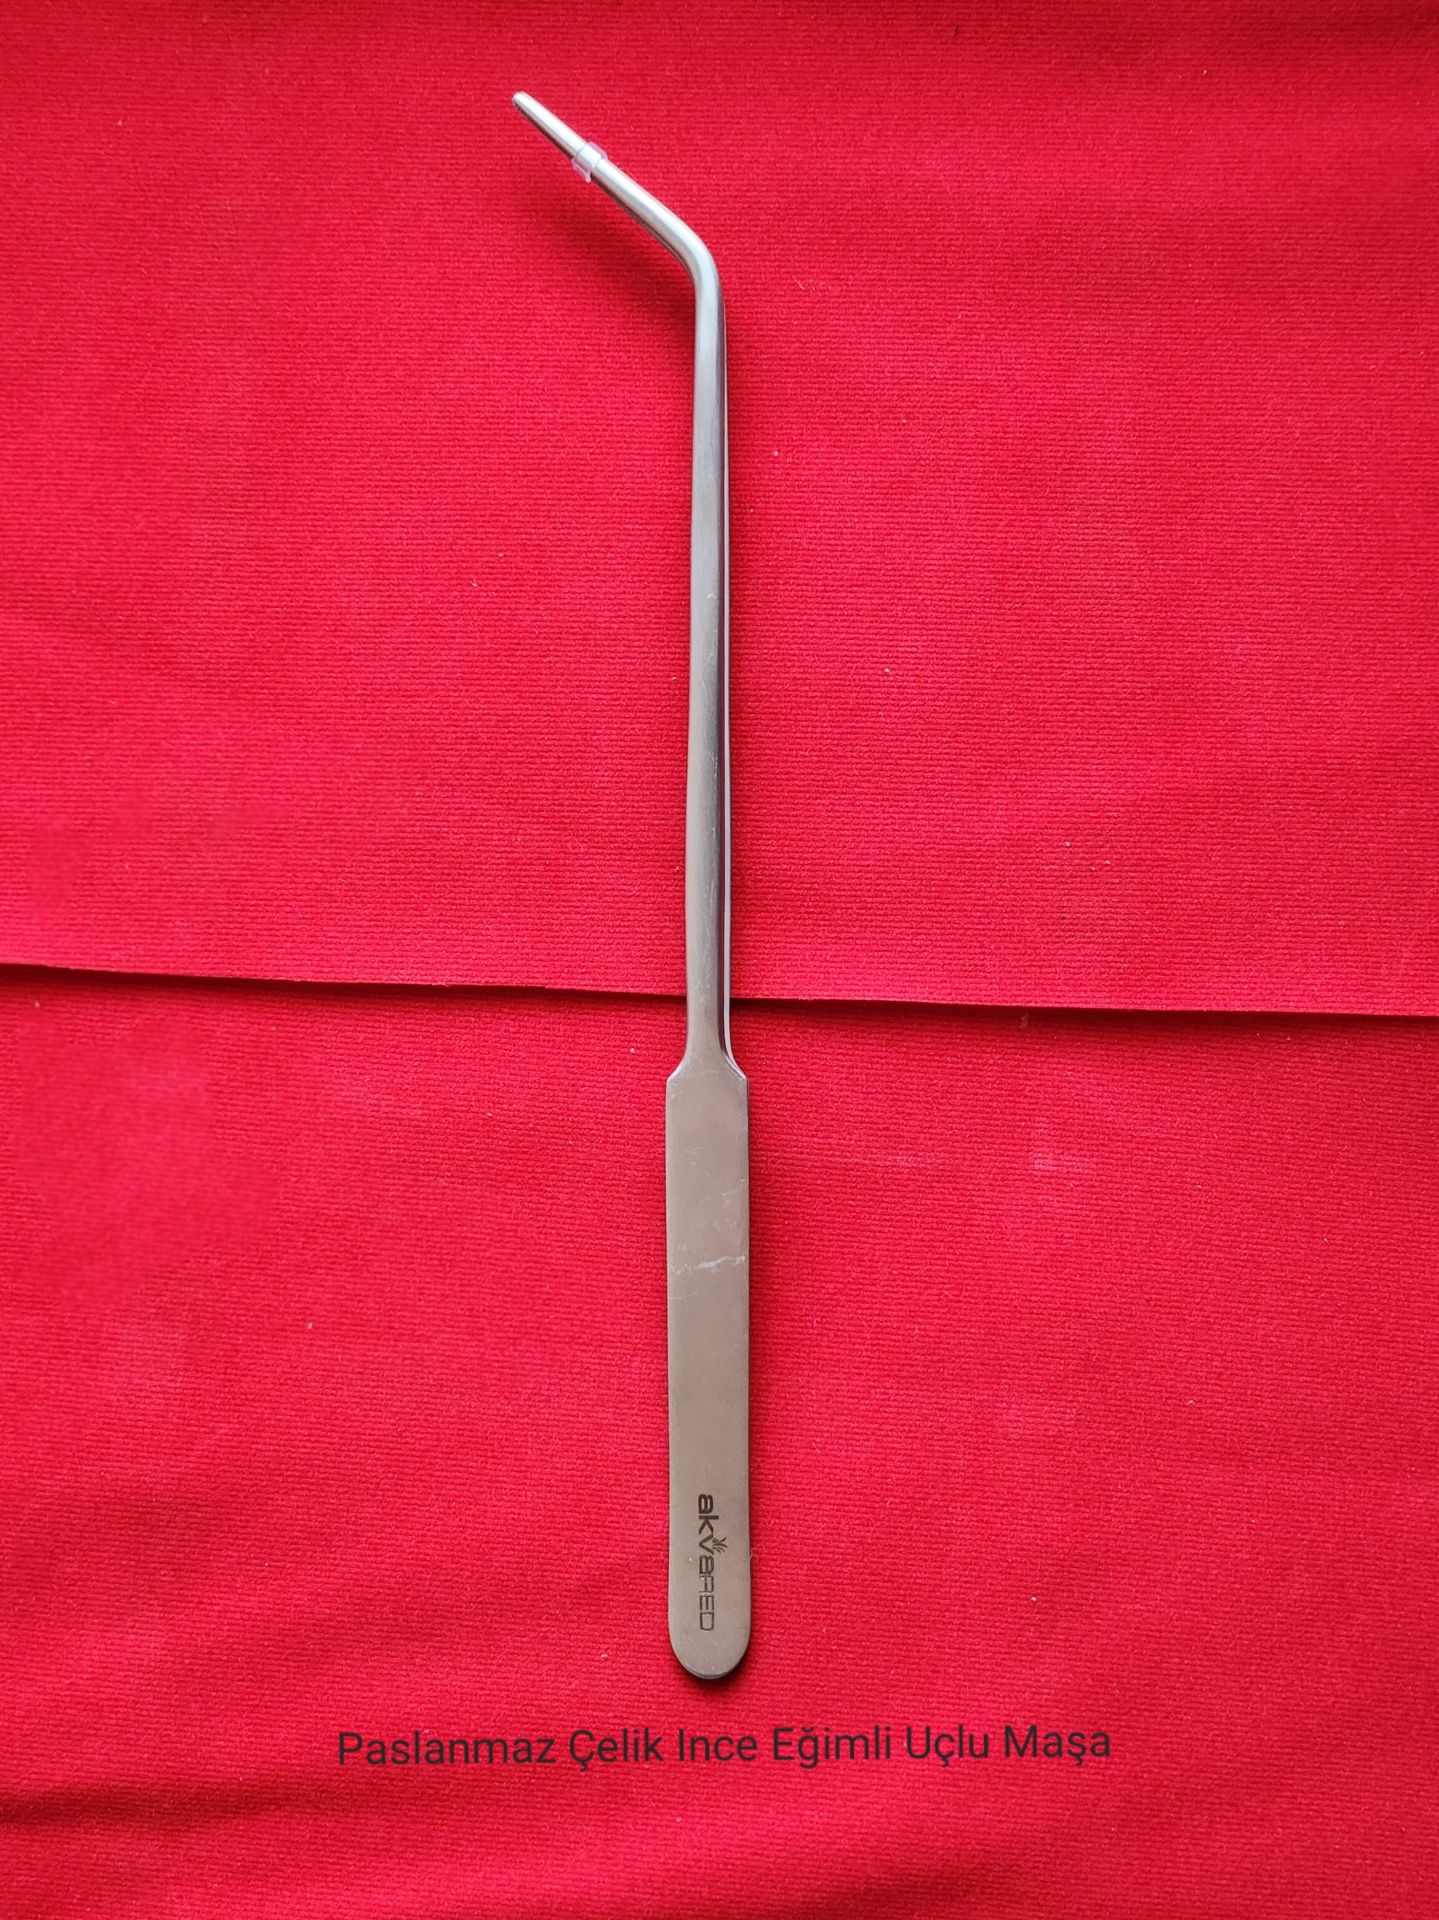 Paslanmaz Çelik İnce Eğimli Uçlu Bitki Maşası (Cımbız) - 25 cm